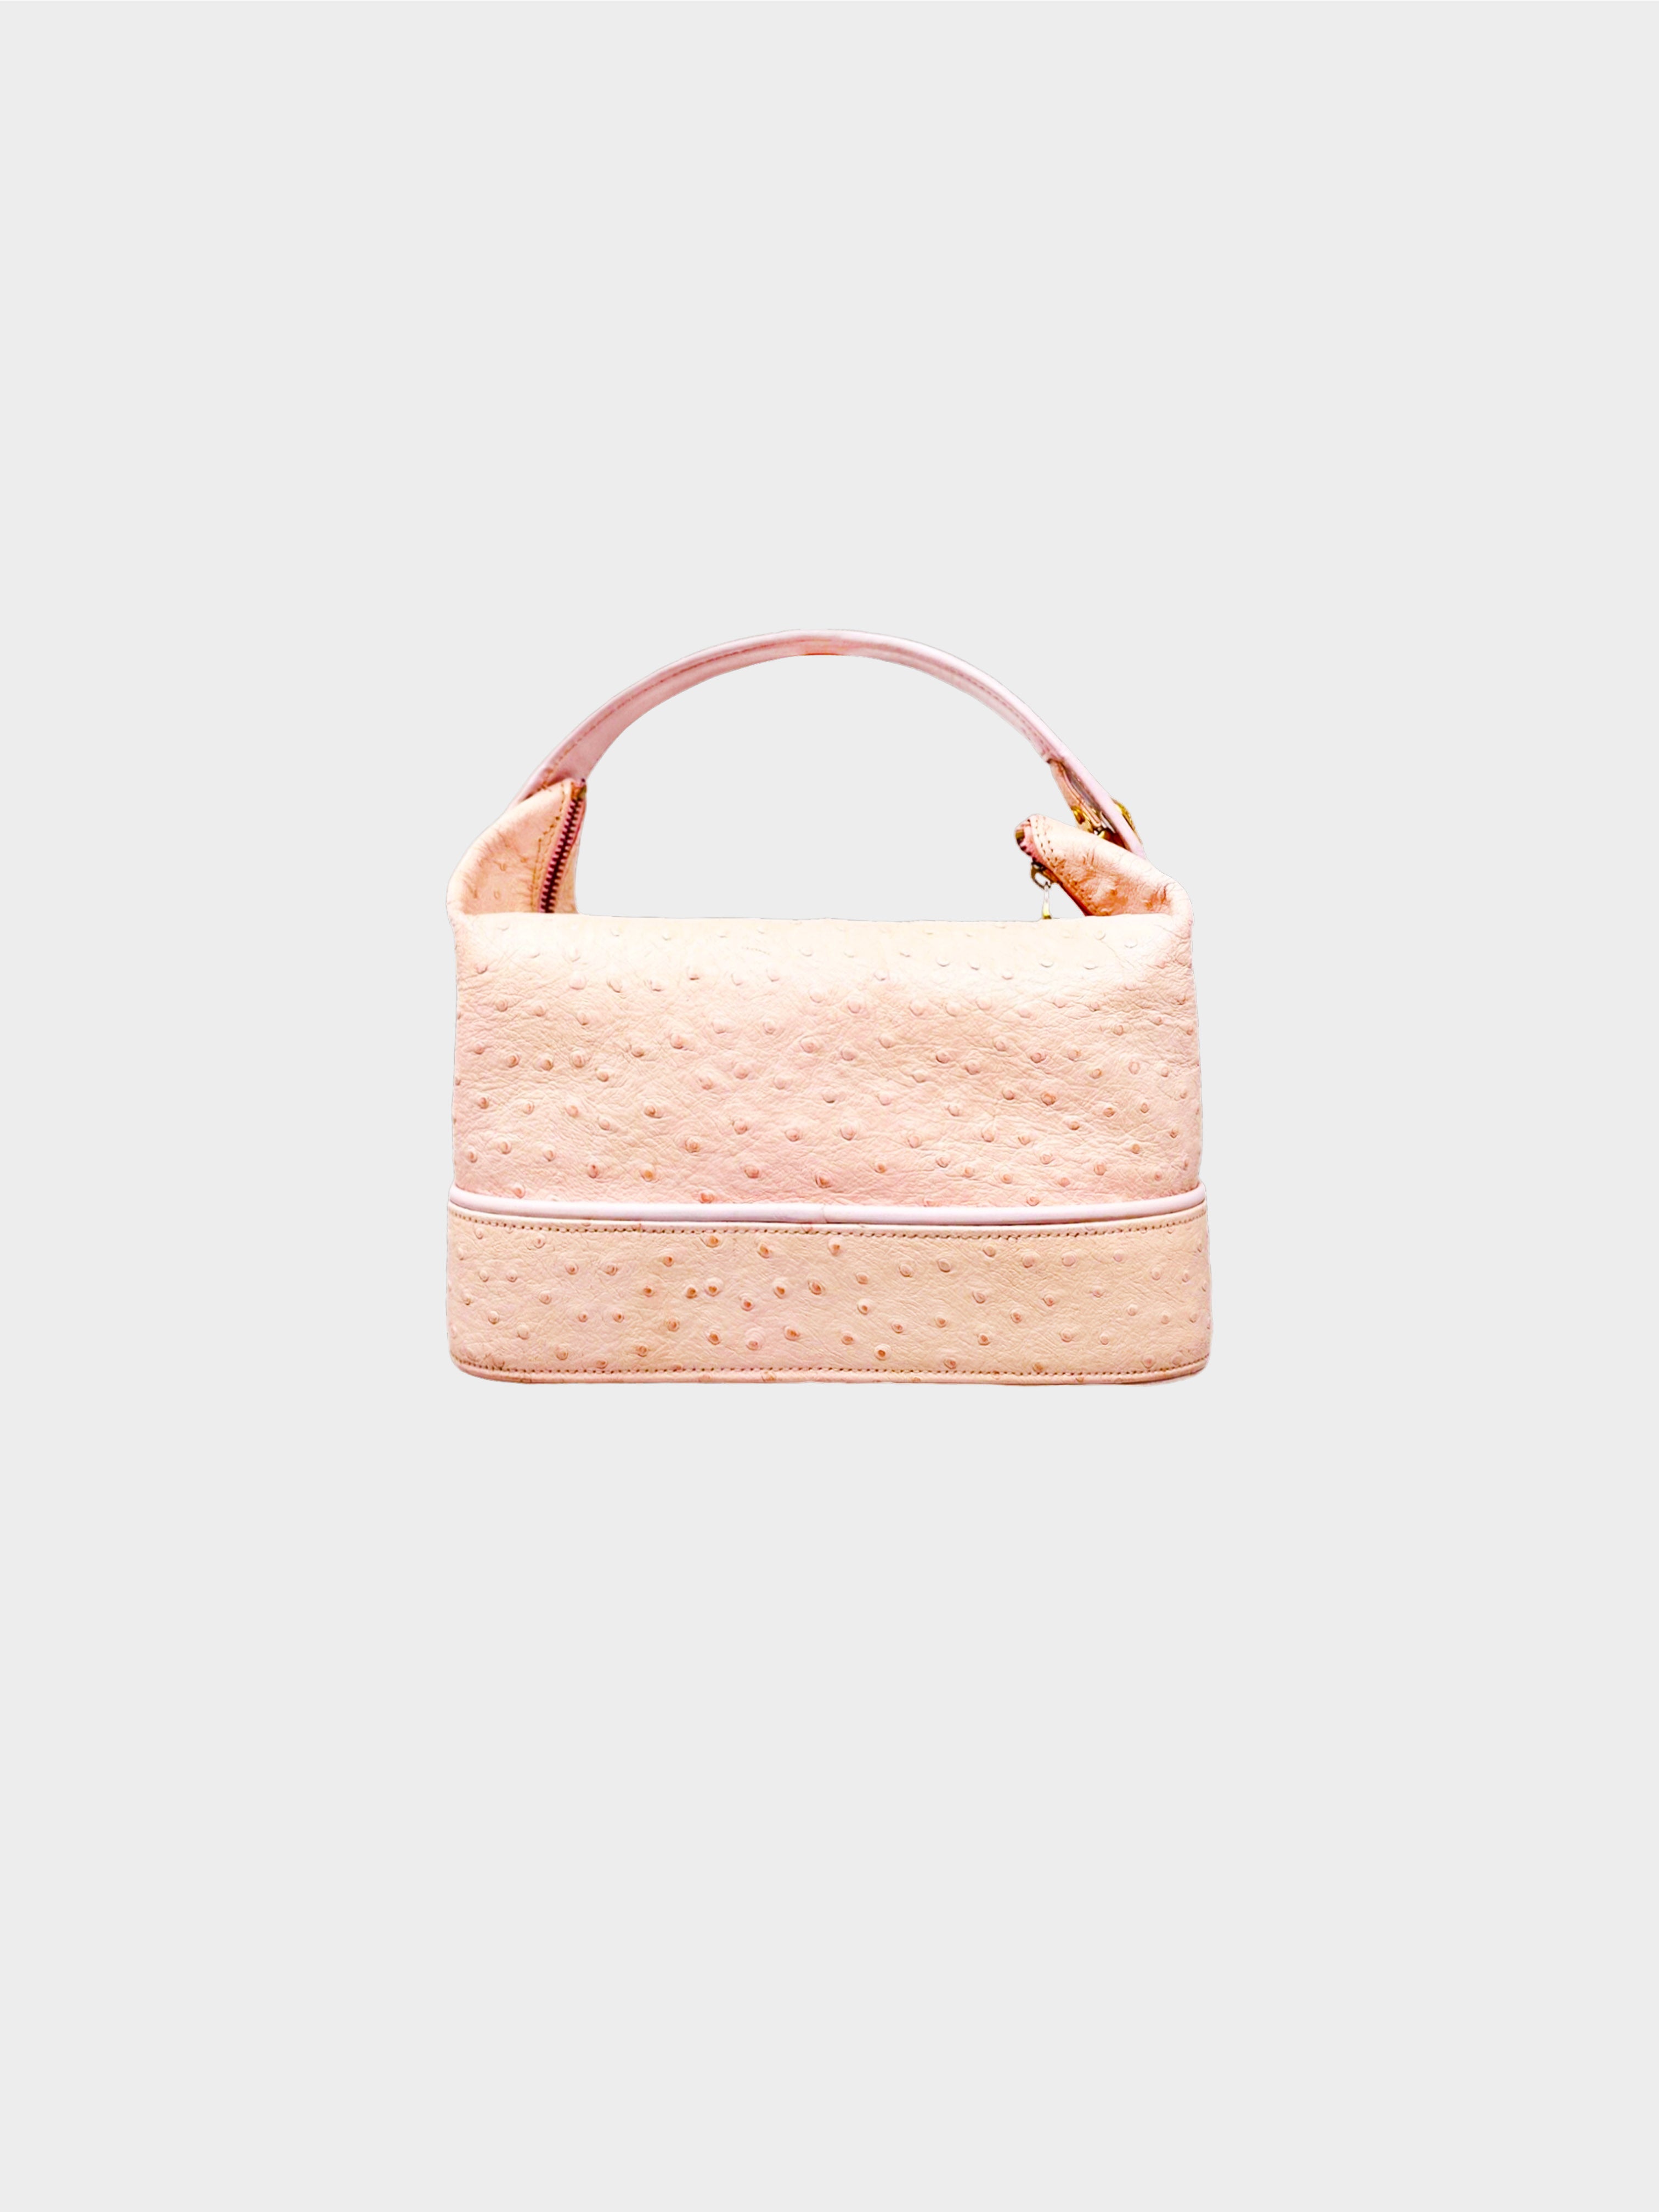 Versace 1990s Pink Vanity Ostrich Handbag